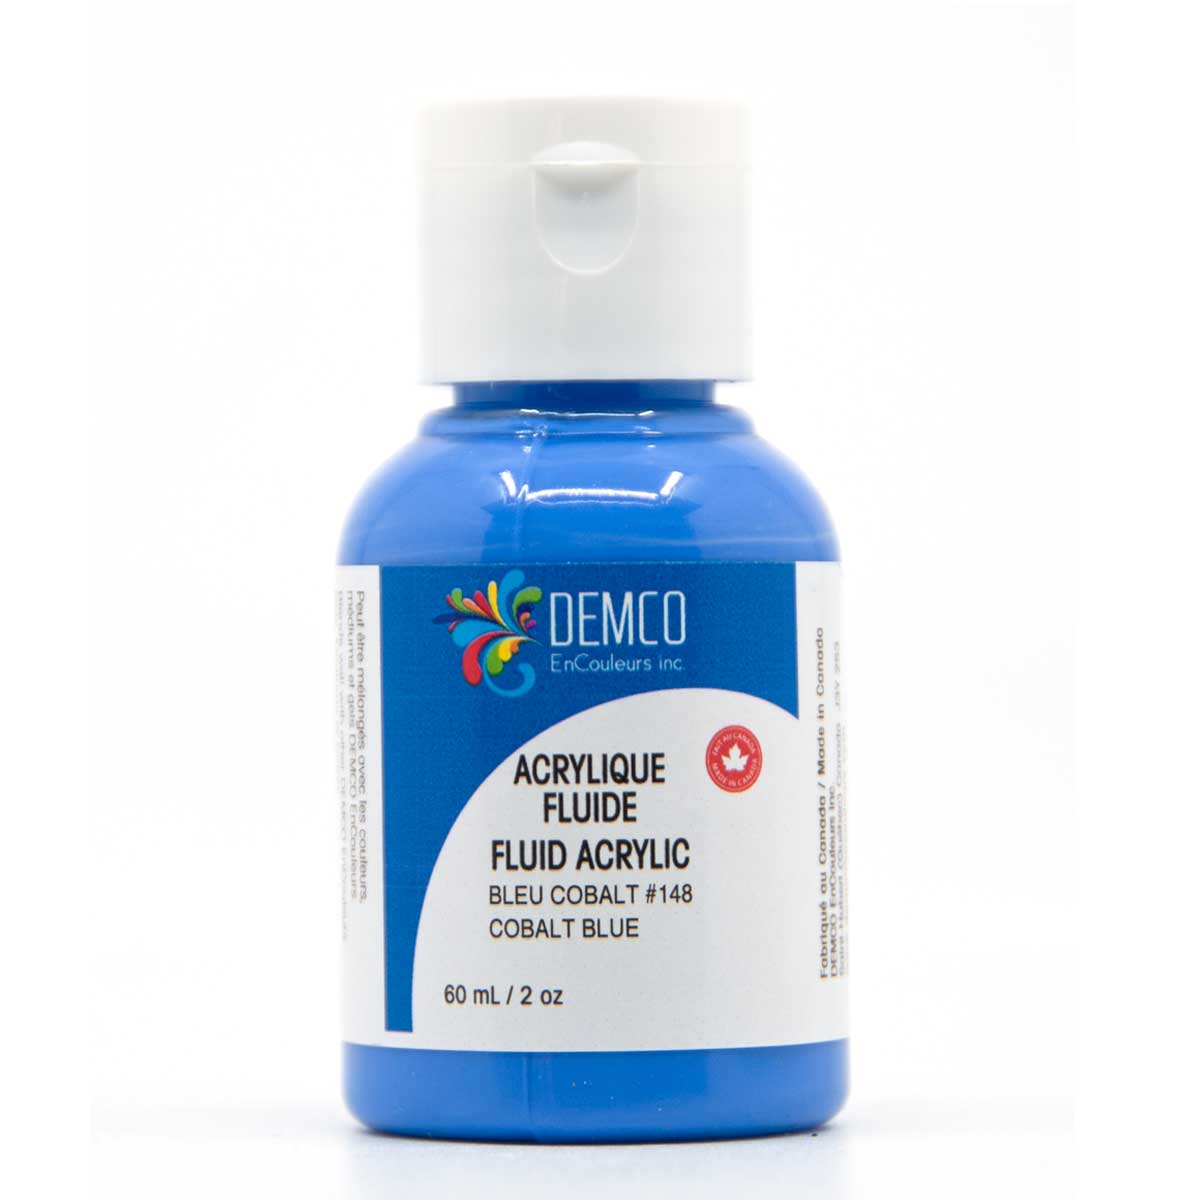 Demco Fluid Acrylic Paint - Cobalt Blue (Hue) 60 ml